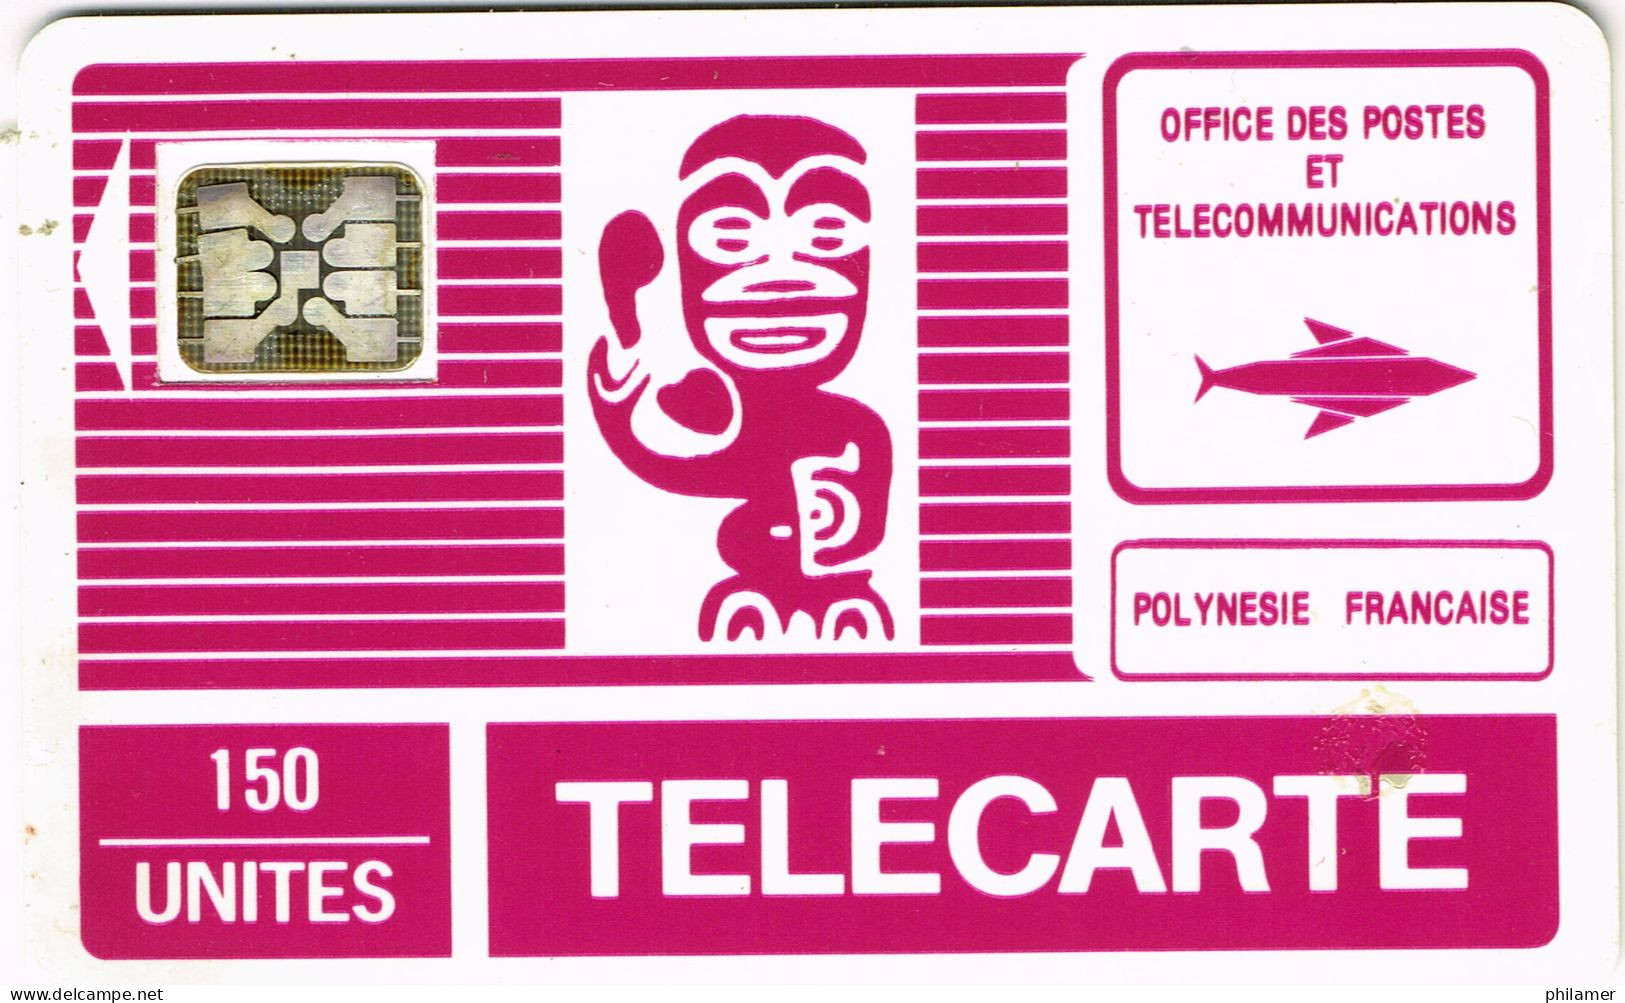 Polynesie Francaise French Polynesia Phonecard Telecarte PF2B Tiki Generique Telephone SC4 Trou 6 UT BE - Nouvelle-Calédonie